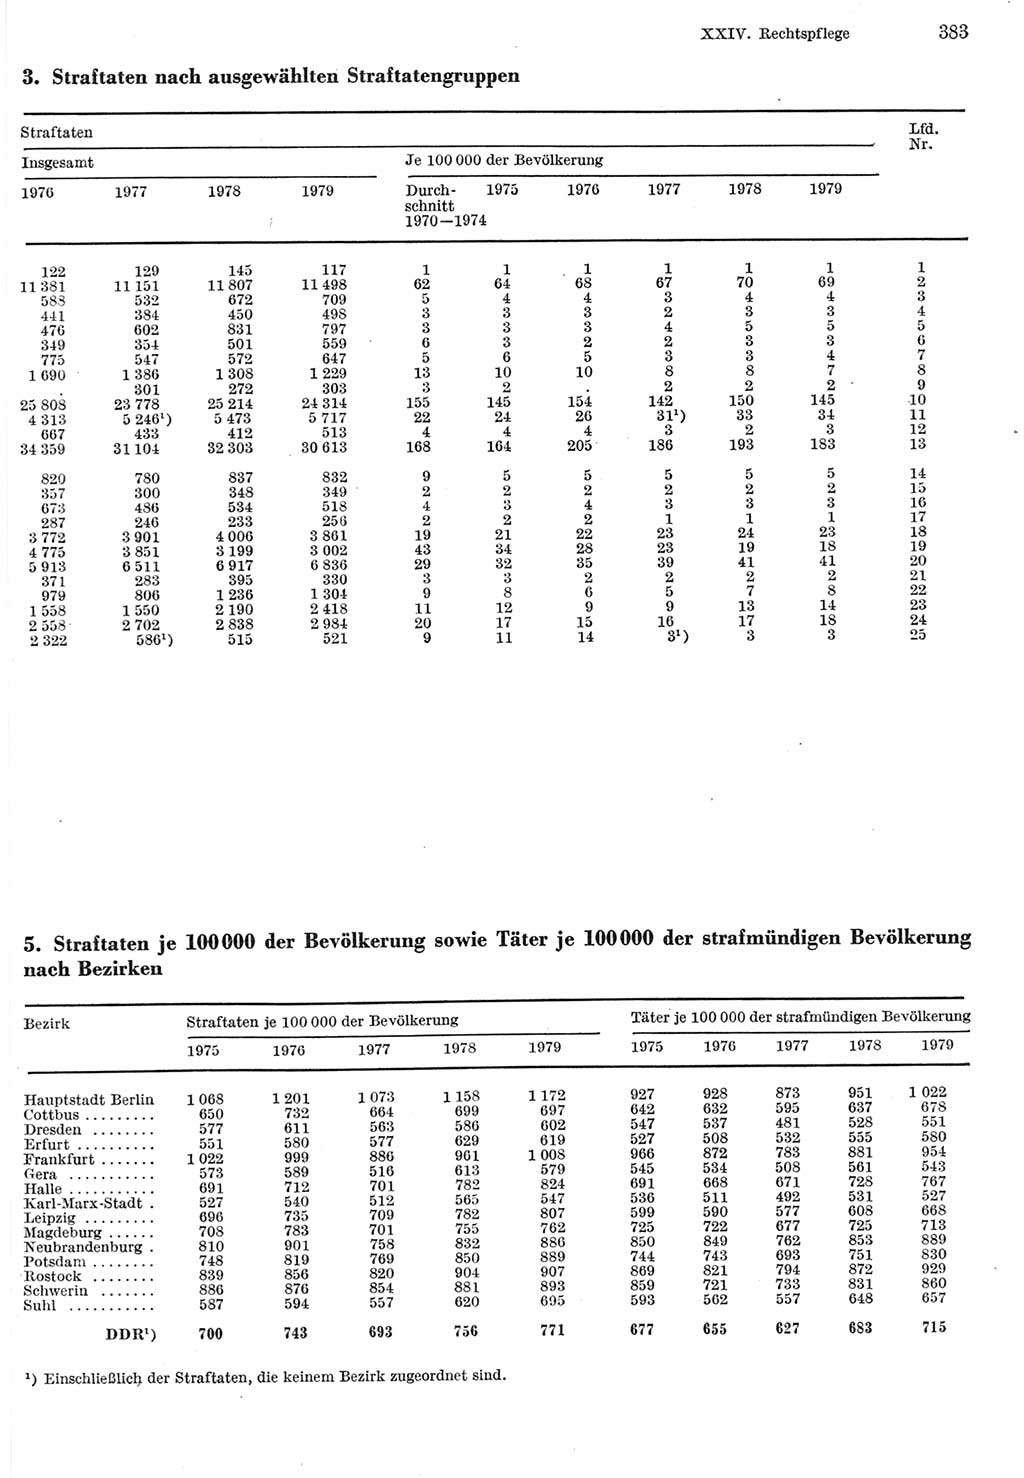 Statistisches Jahrbuch der Deutschen Demokratischen Republik (DDR) 1980, Seite 383 (Stat. Jb. DDR 1980, S. 383)